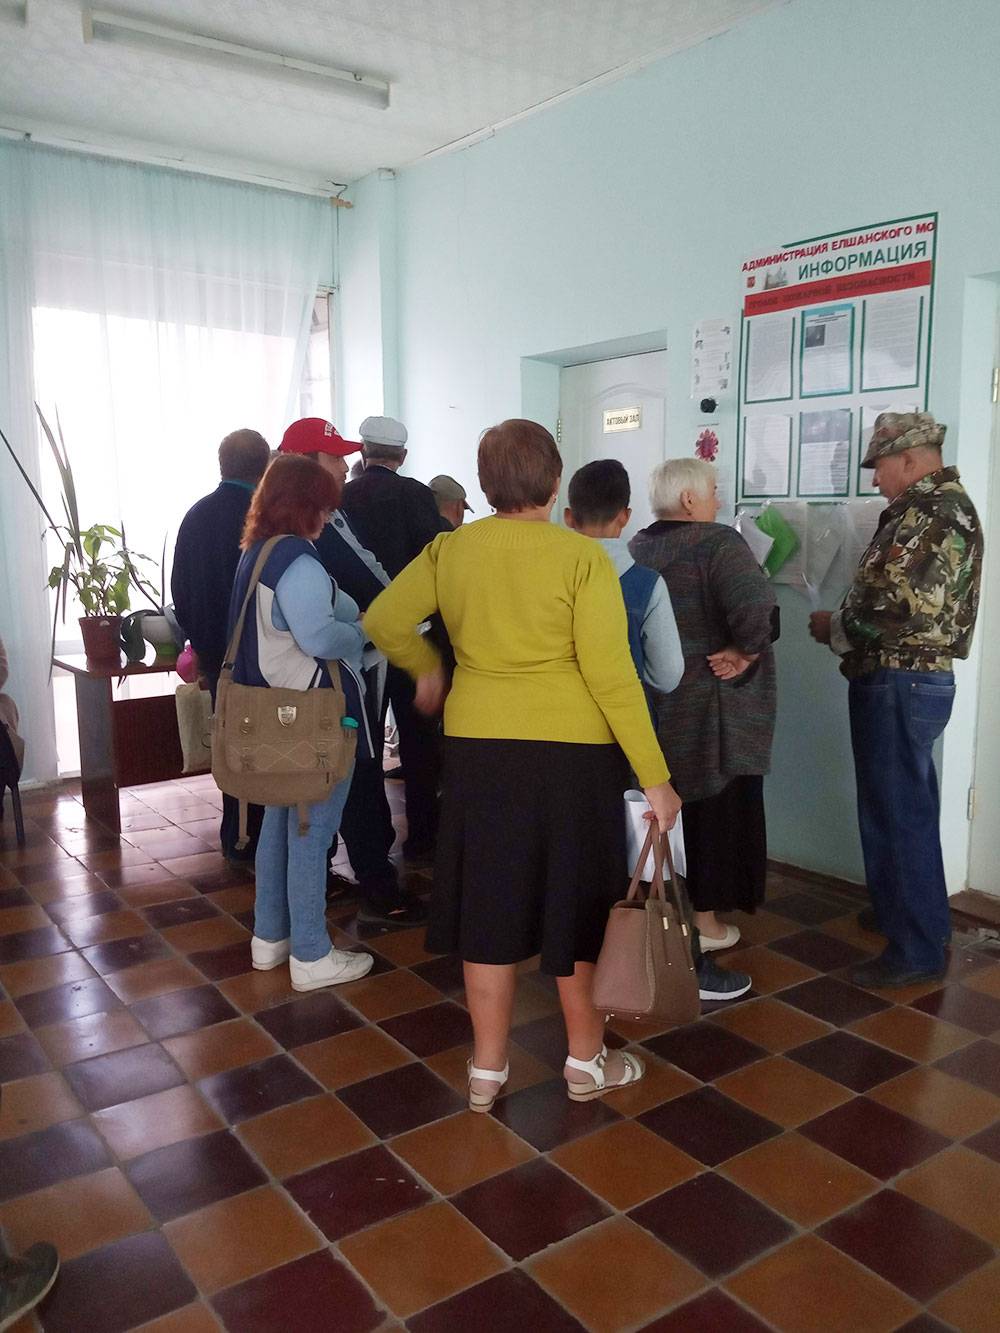 Столько людей стоит в очереди на выездное обслуживание МФЦ в селе Елшанка Саратовской области. Очереди две: сдать документы и получить